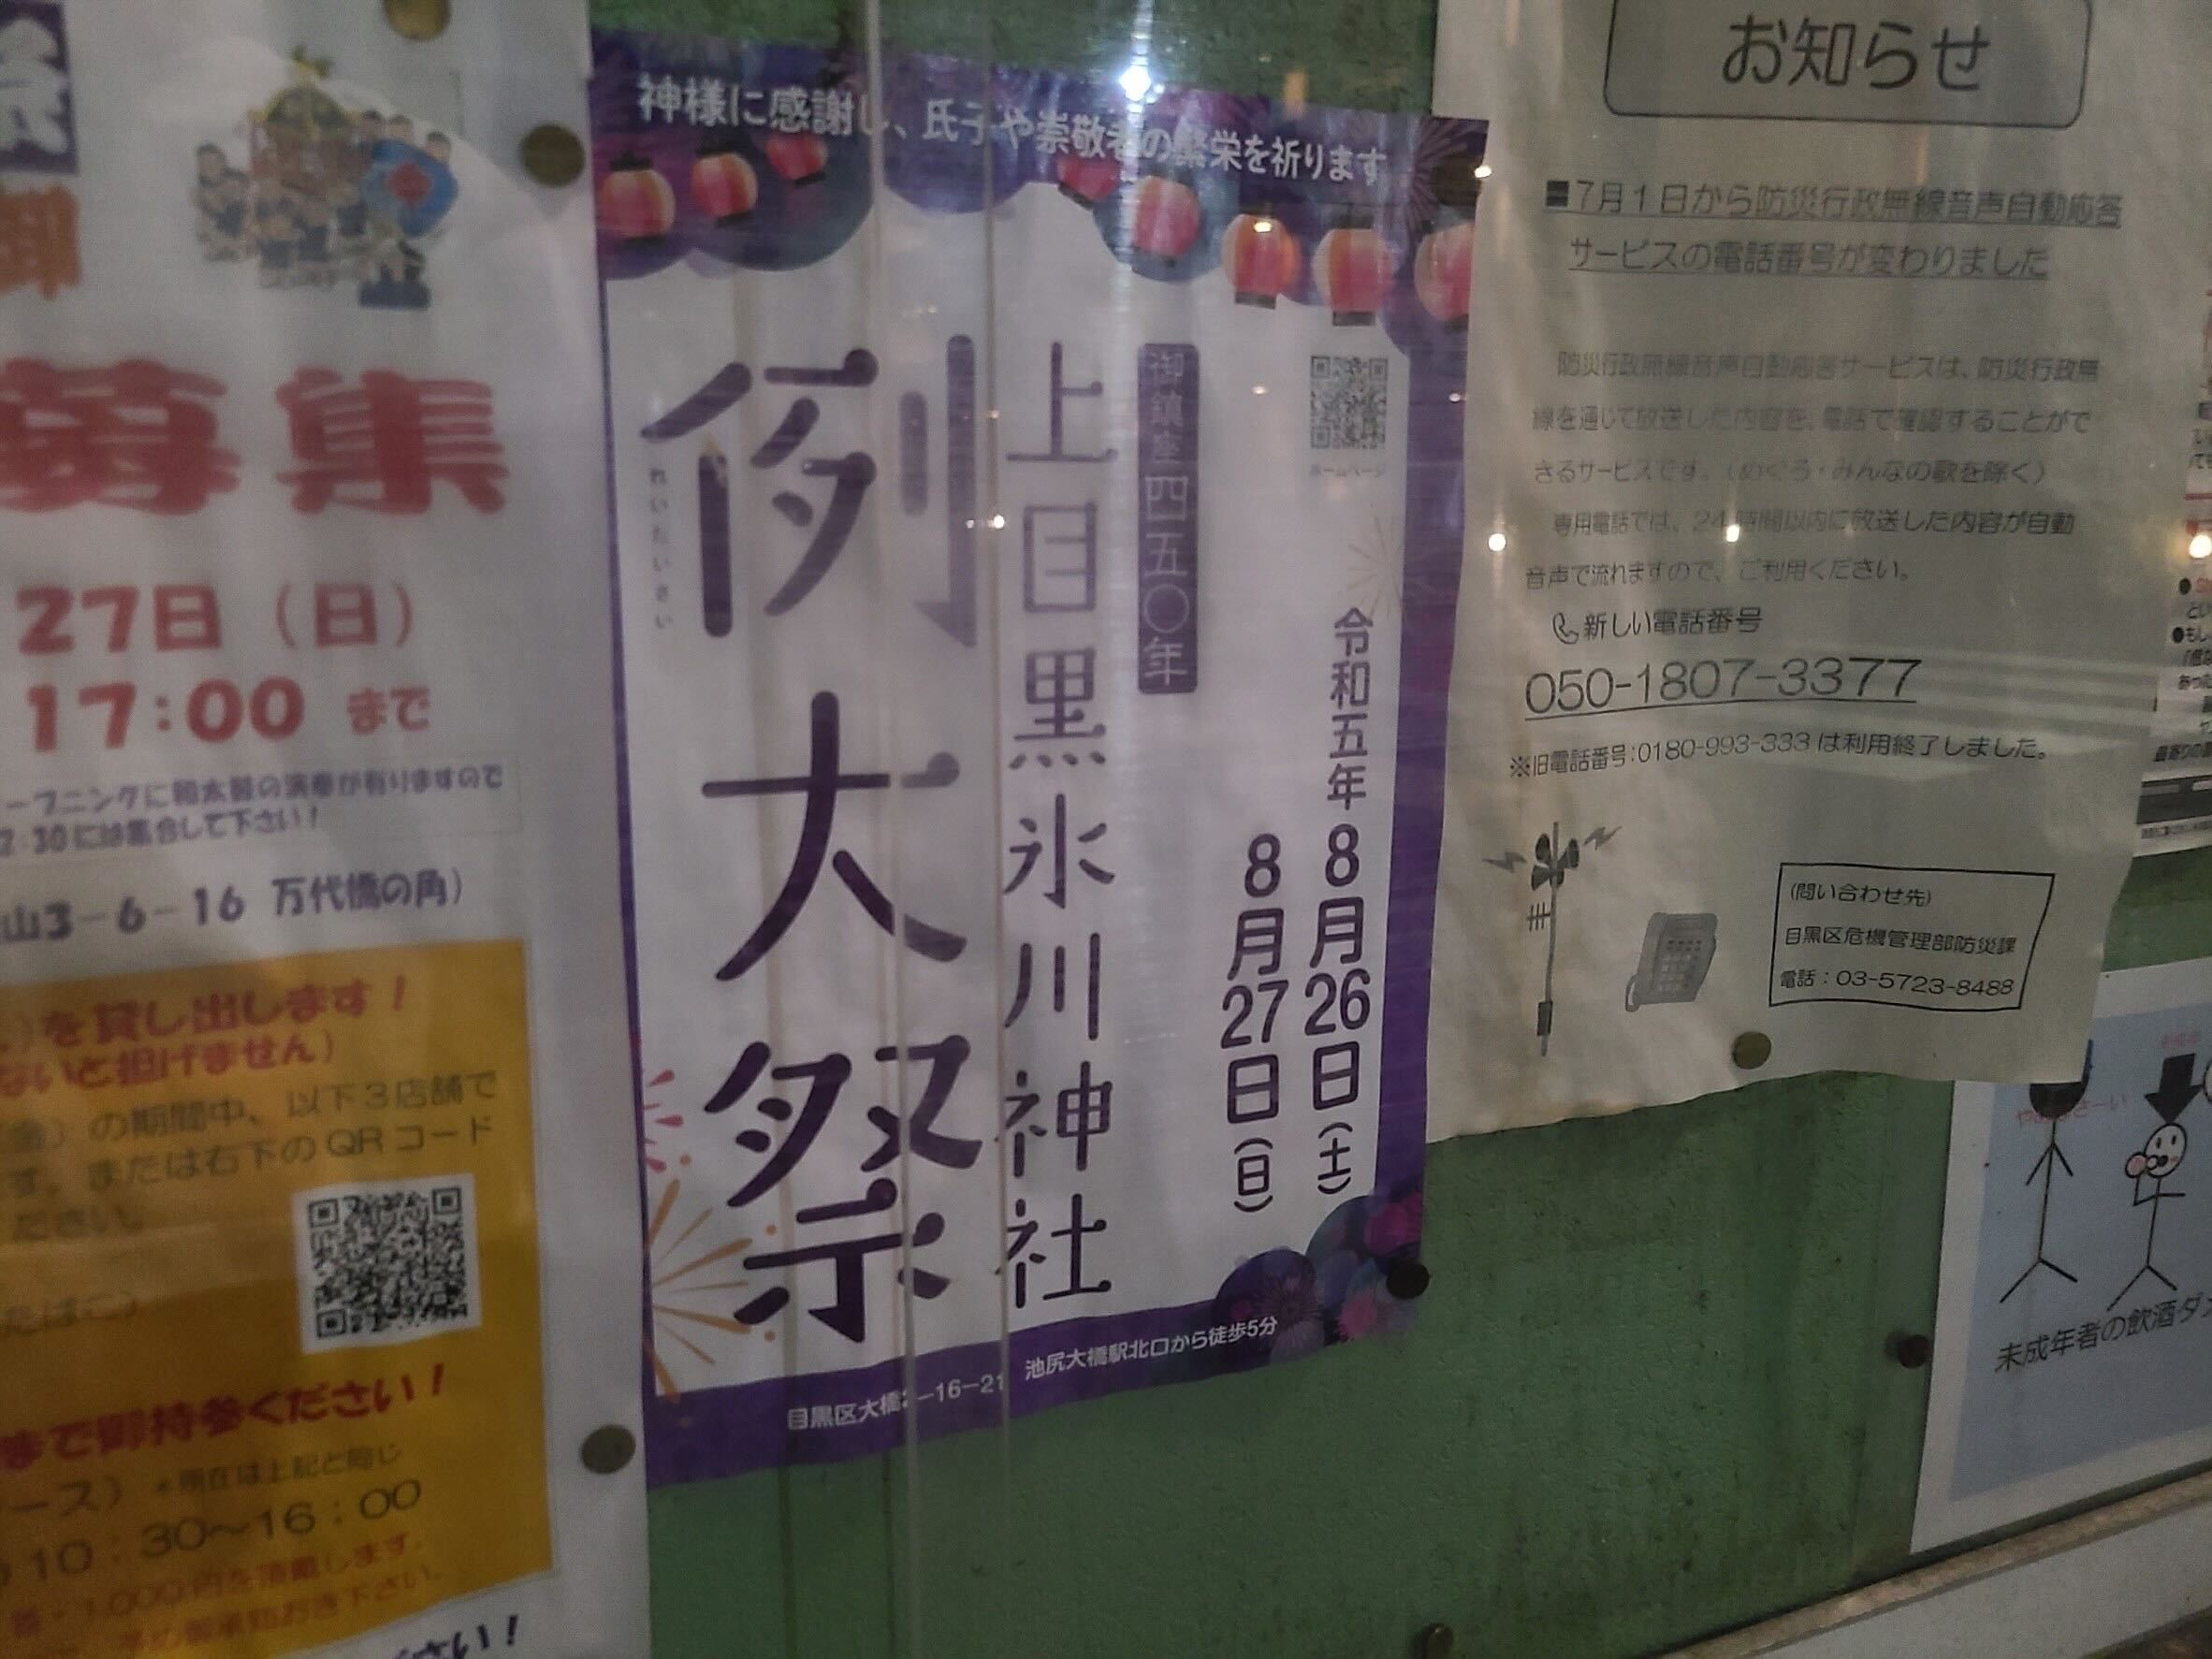 上目黒氷川神社例大祭のポスター